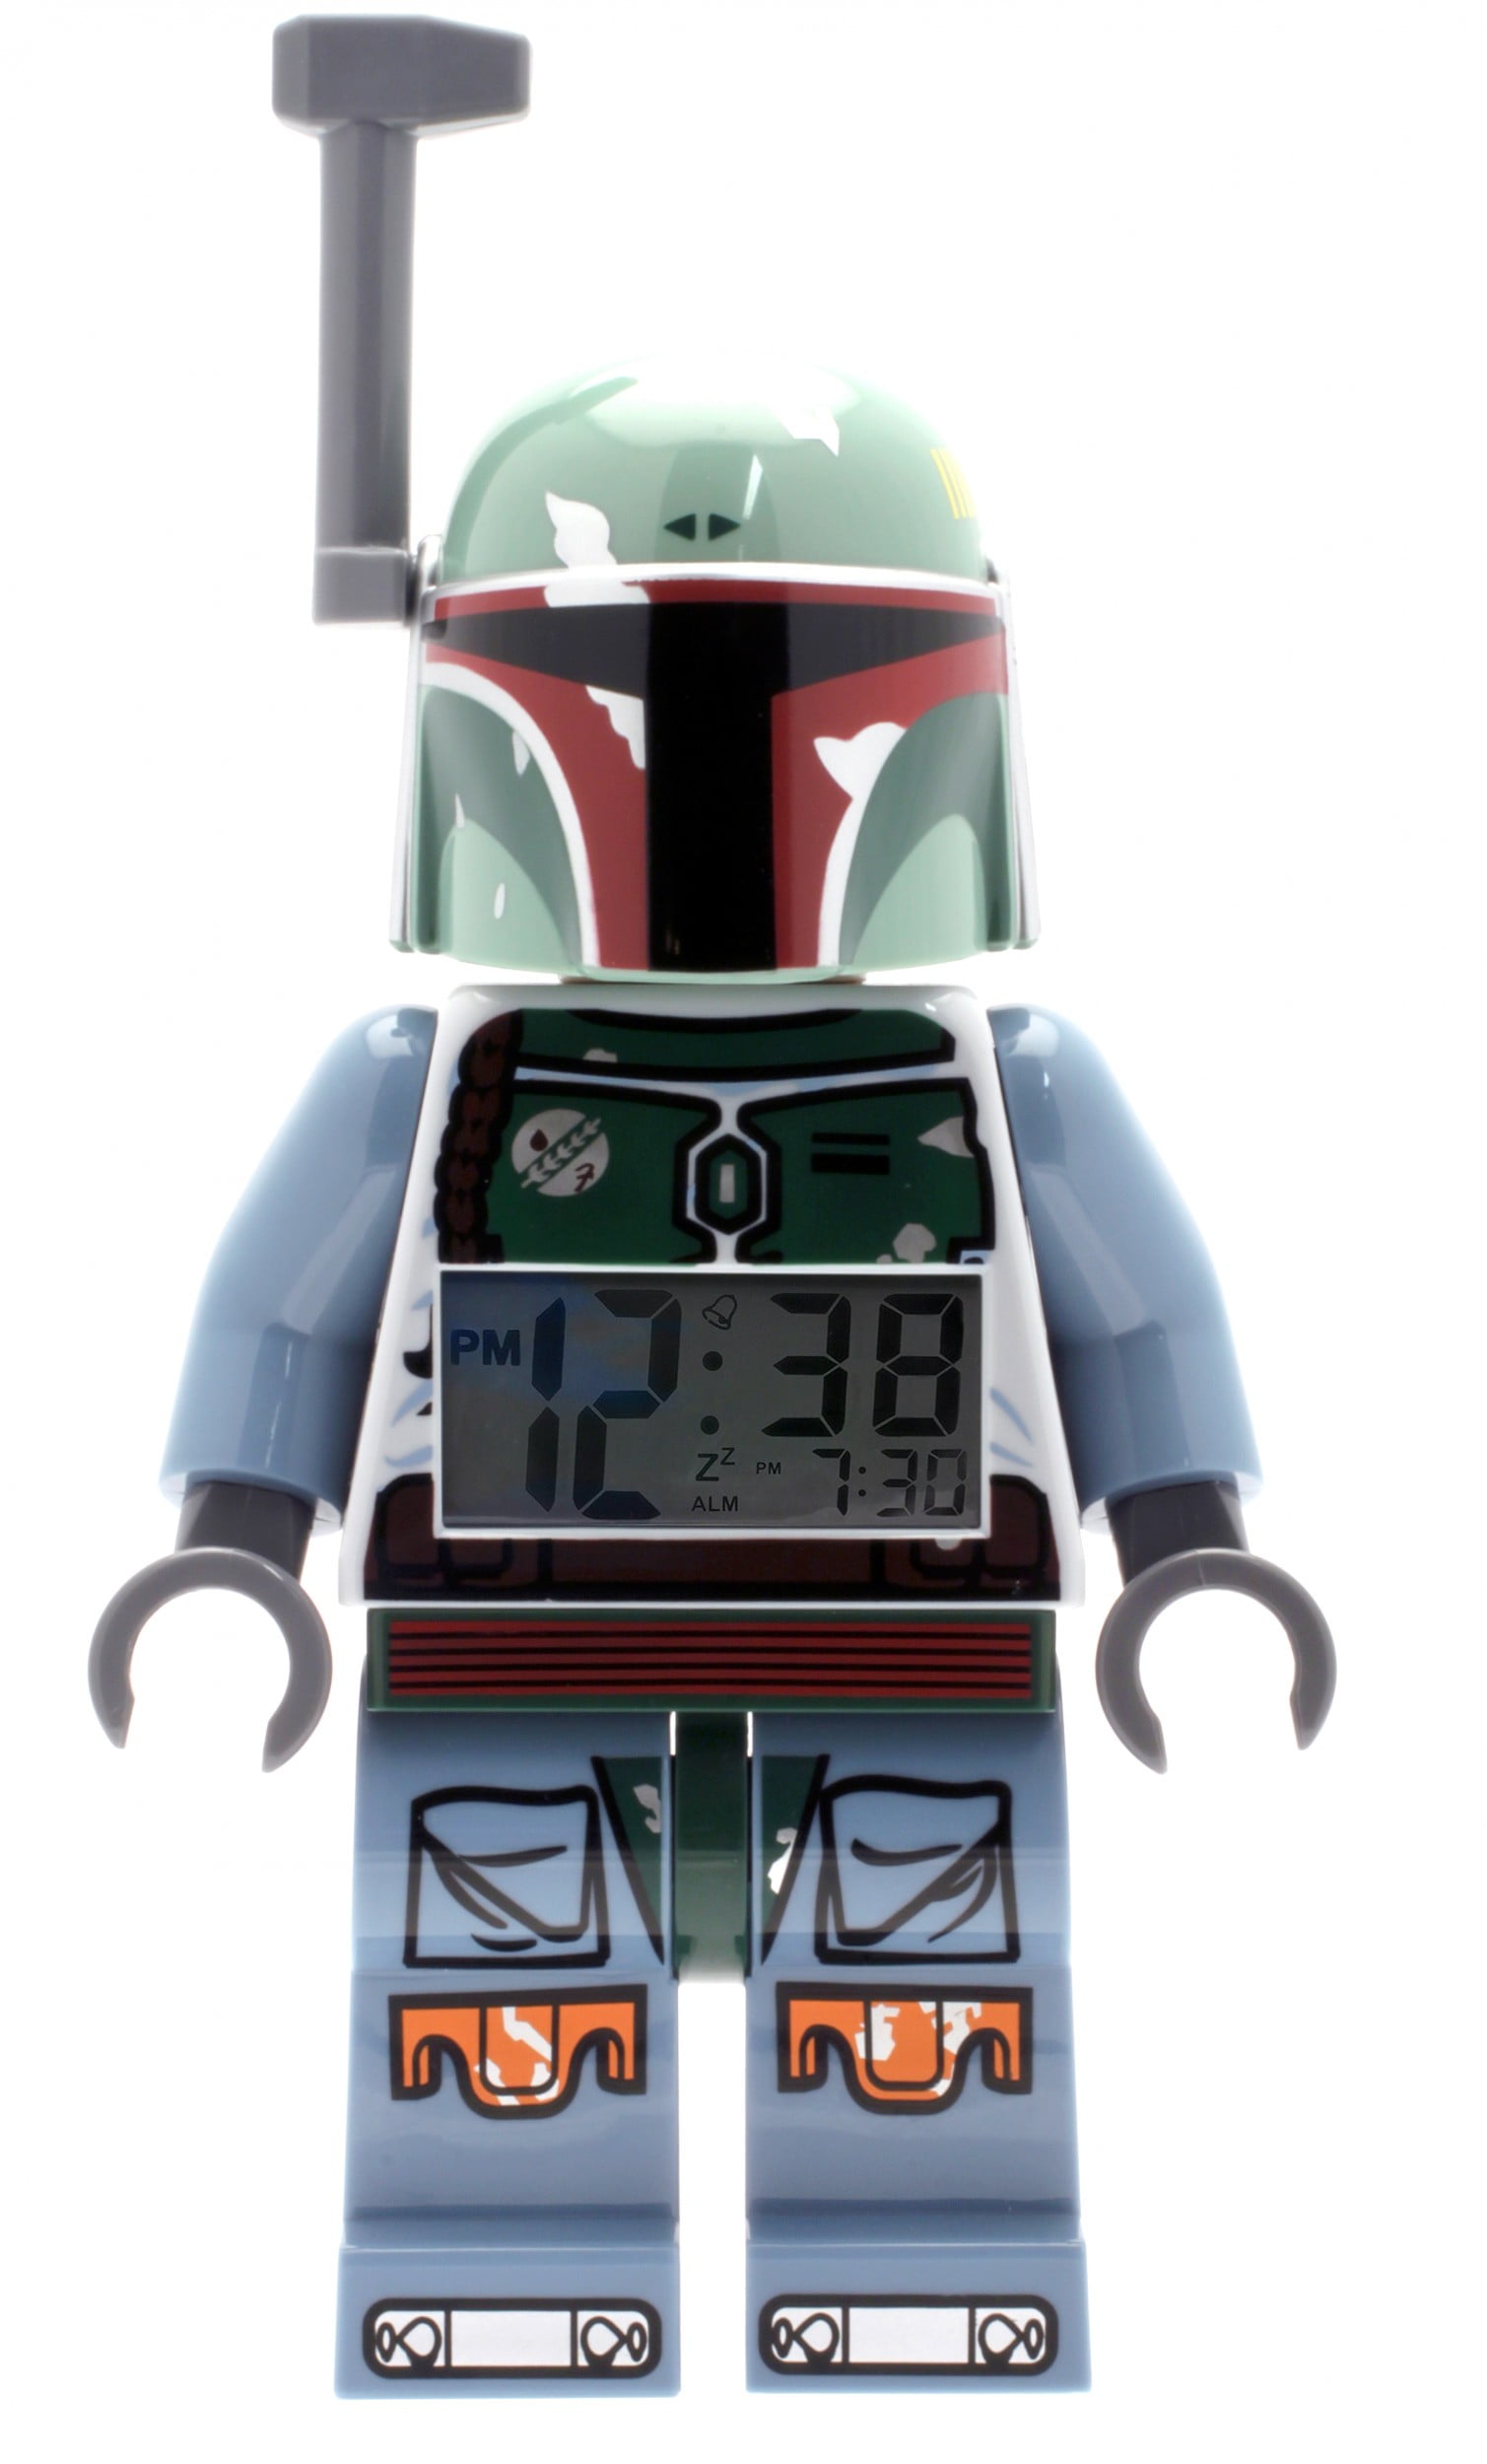 Download LEGO® Star Wars? Boba Fett? Minifigure Clock - Walmart.com - Walmart.com